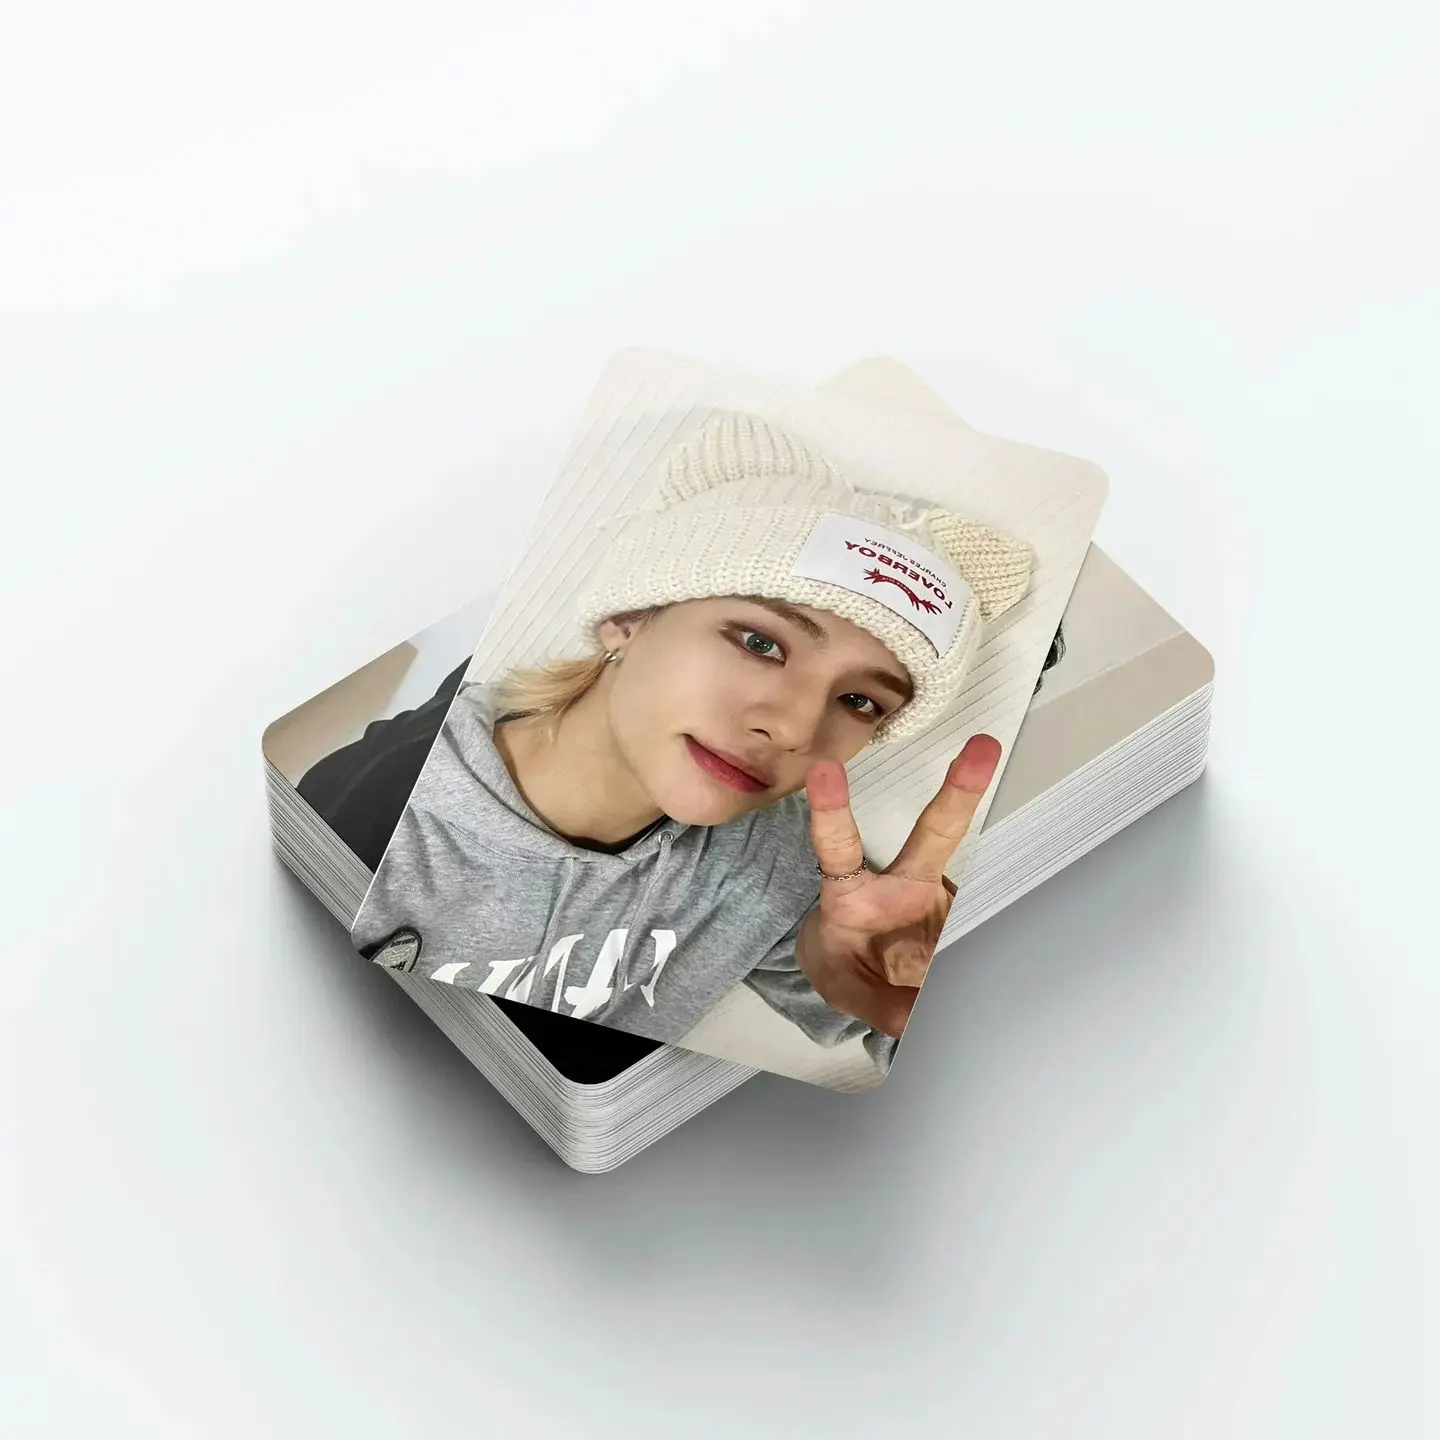 55 stücke kpop gruppe fotocard hyunjin felix bangchan neues album lomo karten foto druck karten set fans sammlung